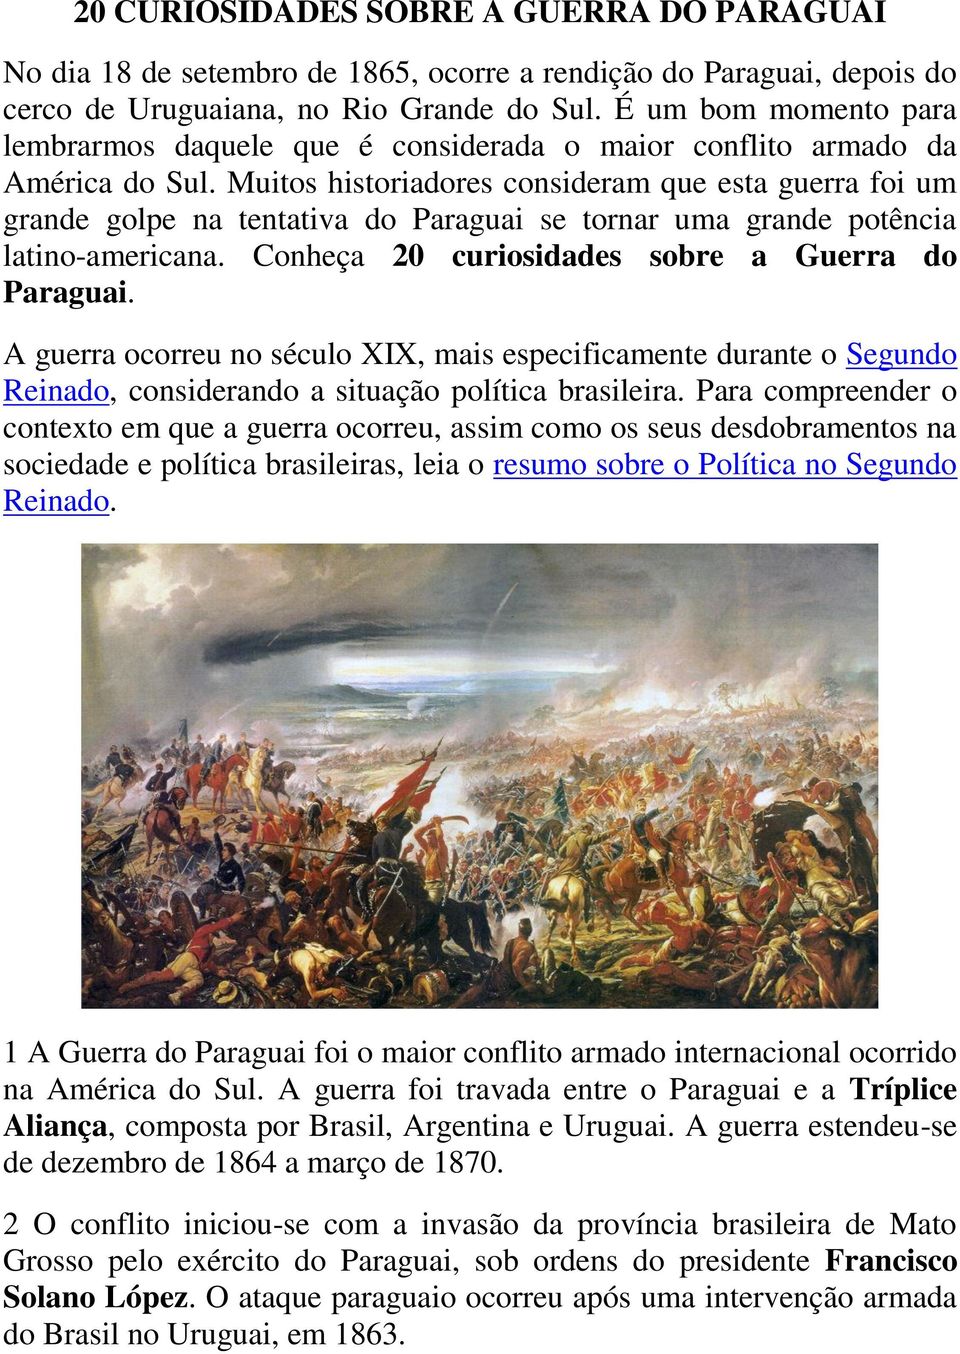 Muitos historiadores consideram que esta guerra foi um grande golpe na tentativa do Paraguai se tornar uma grande potência latino-americana. Conheça 20 curiosidades sobre a Guerra do Paraguai.